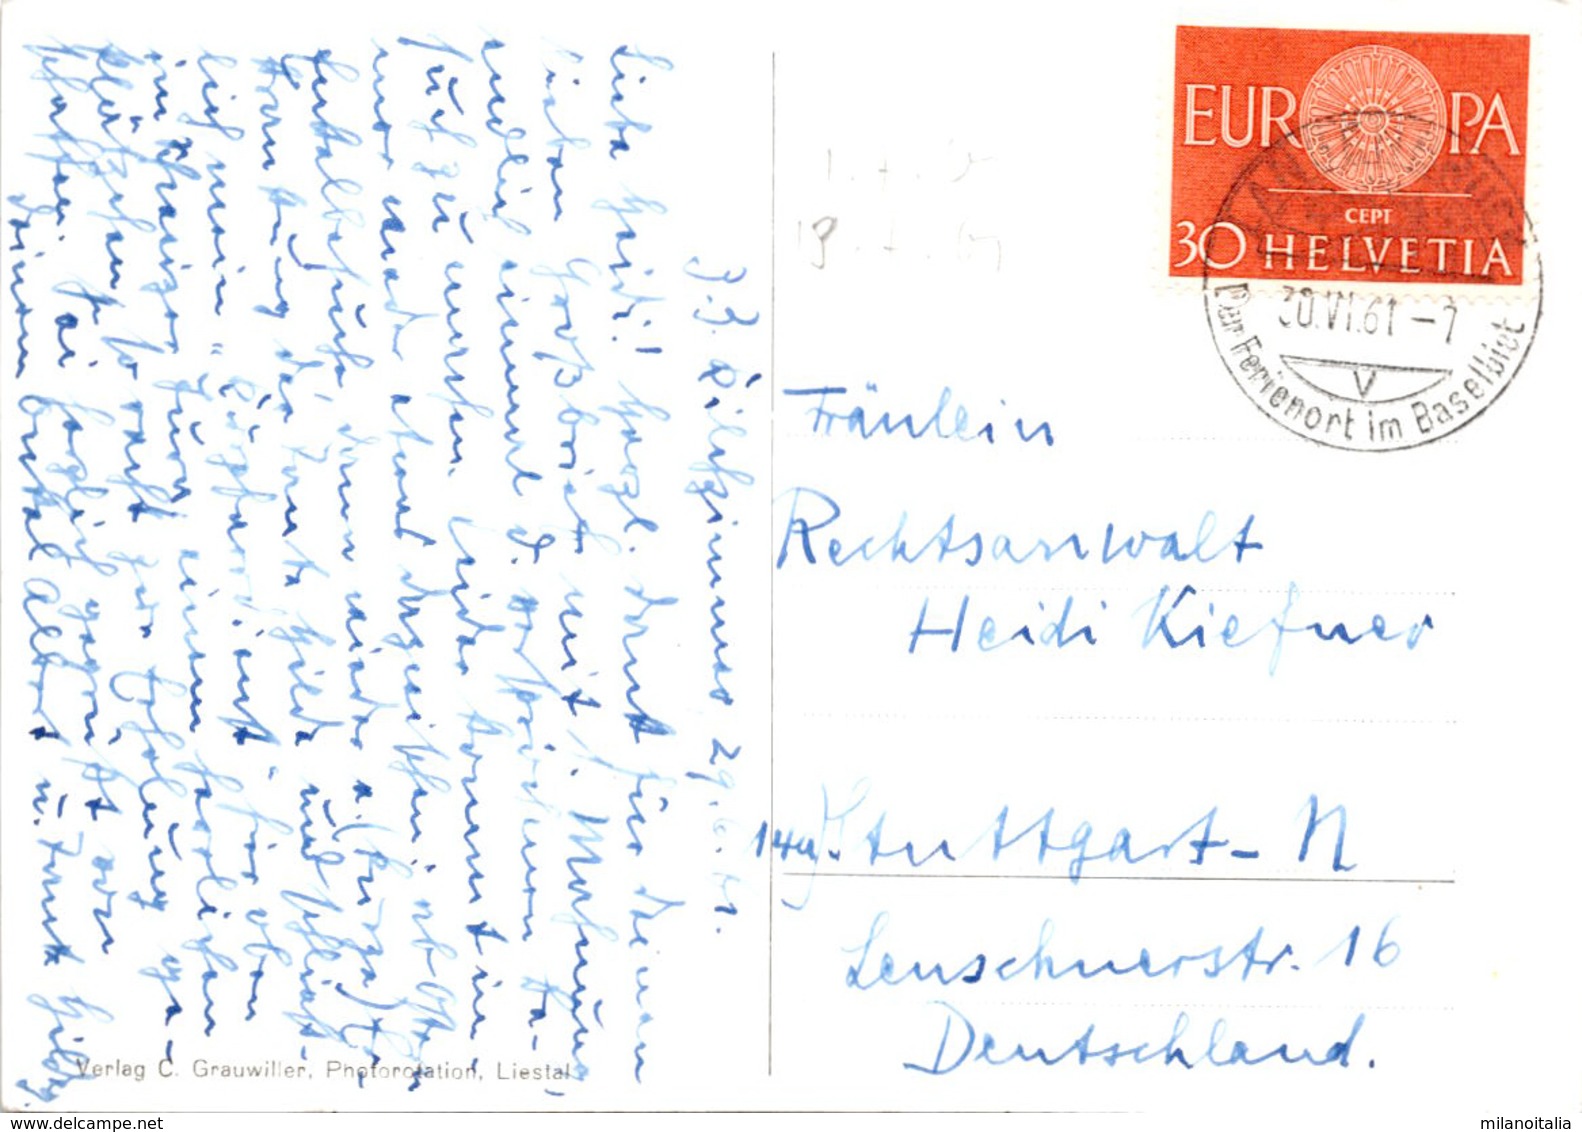 Ferienheim Kilchzimmer Mit Ankenballen (Baselland) Ob Langenbruck * 30. 6. 1961 - Langenbruck